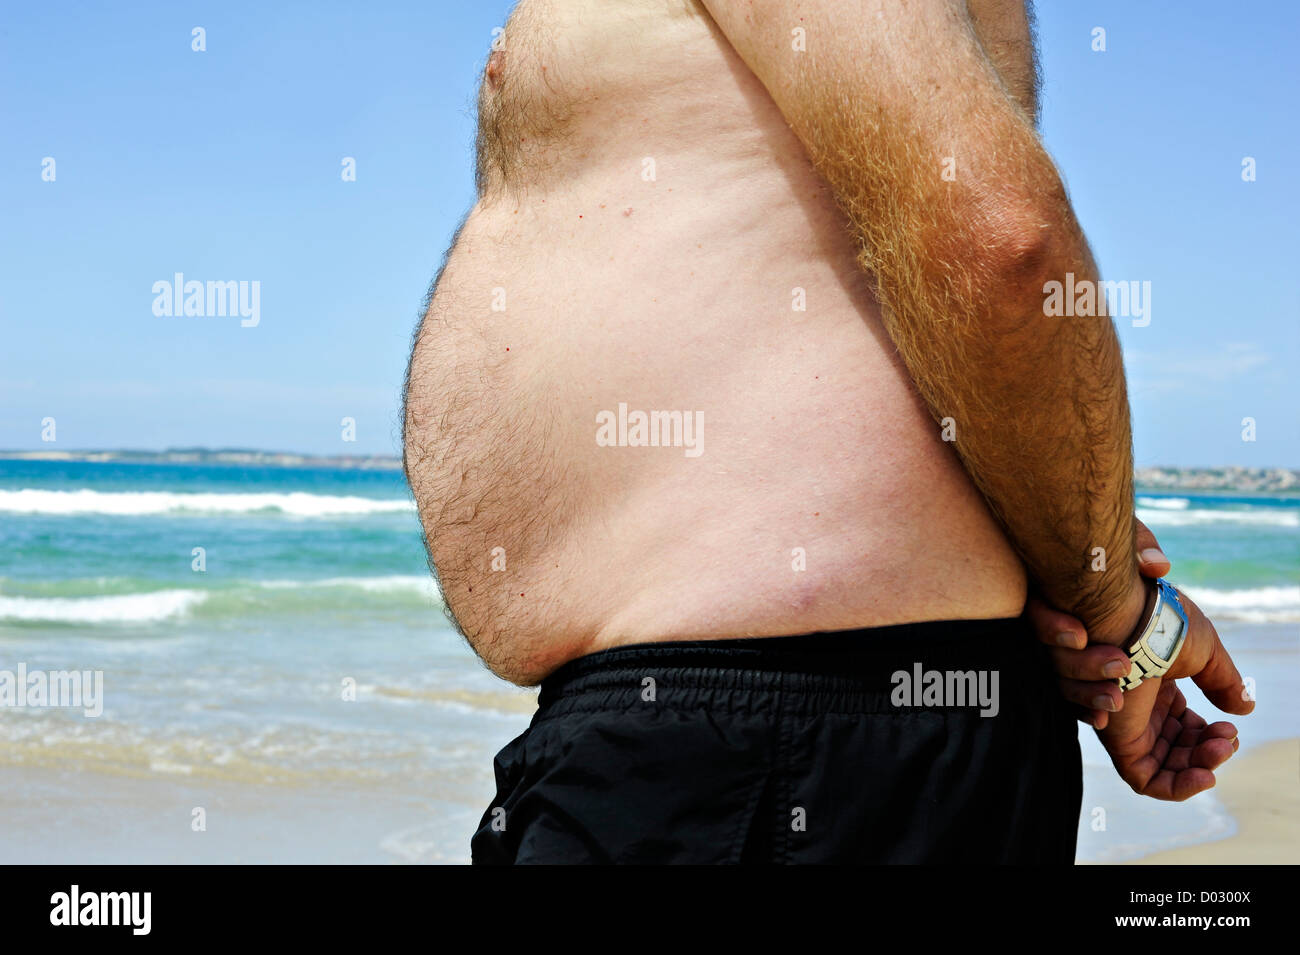 Uomo grasso sulla spiaggia che mostra il suo ventre malsano Foto Stock